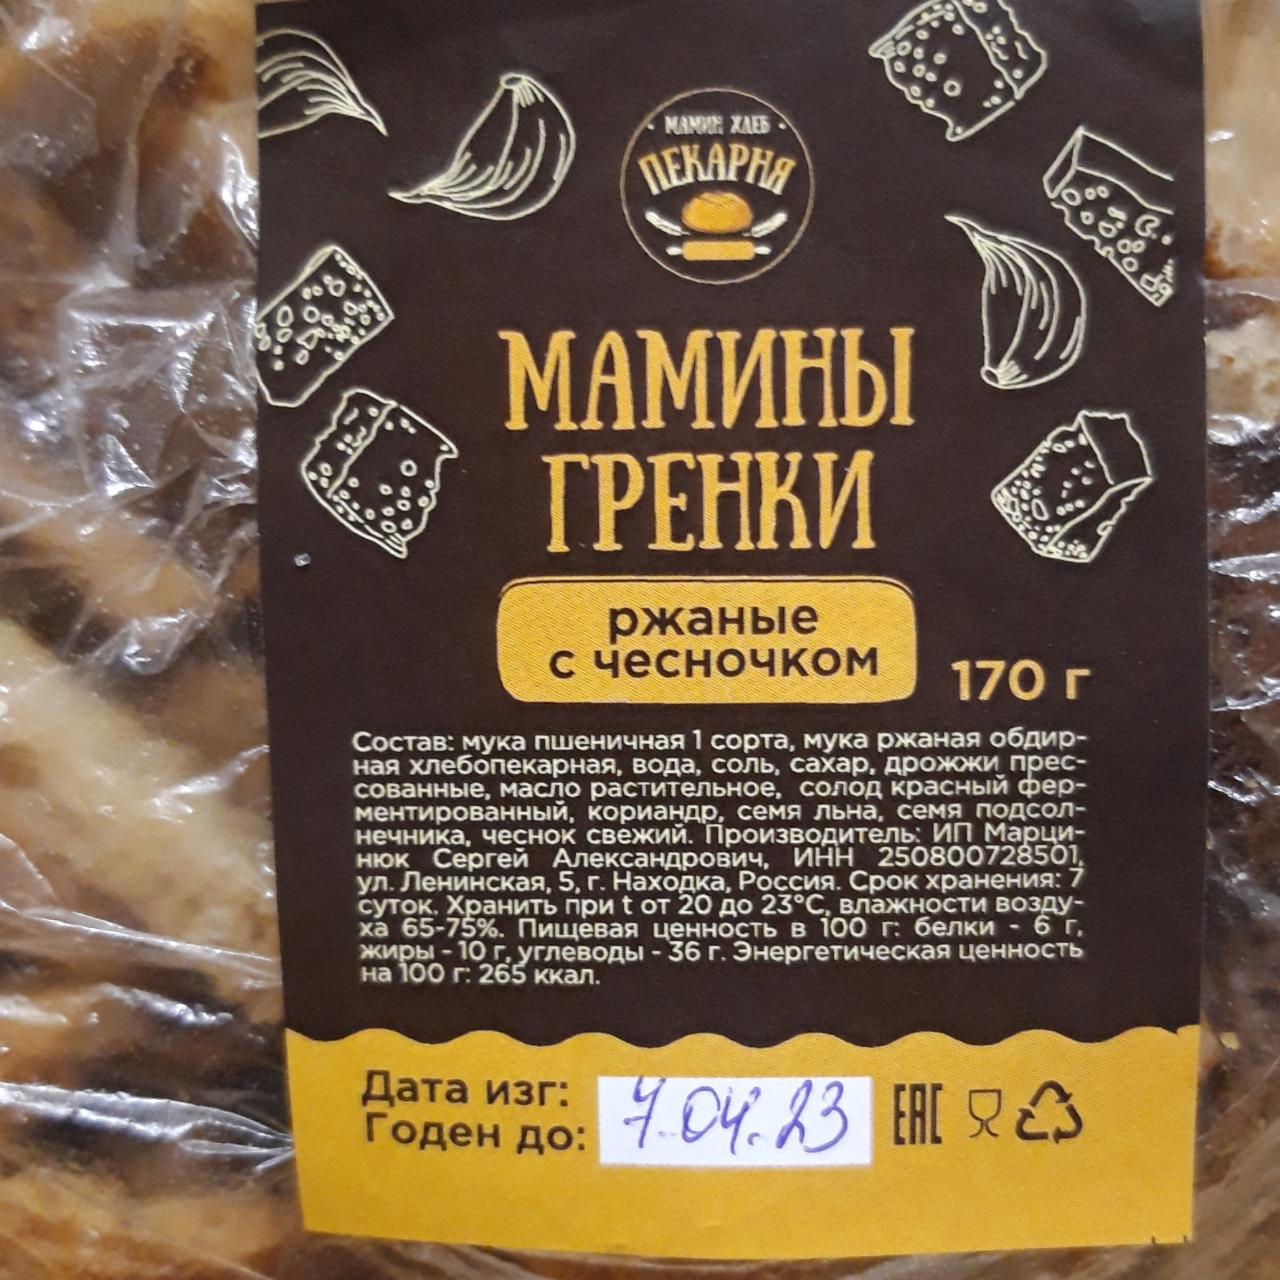 Фото - Мамины гренки ржаные с чесноком Пекарня Мамин хлеб